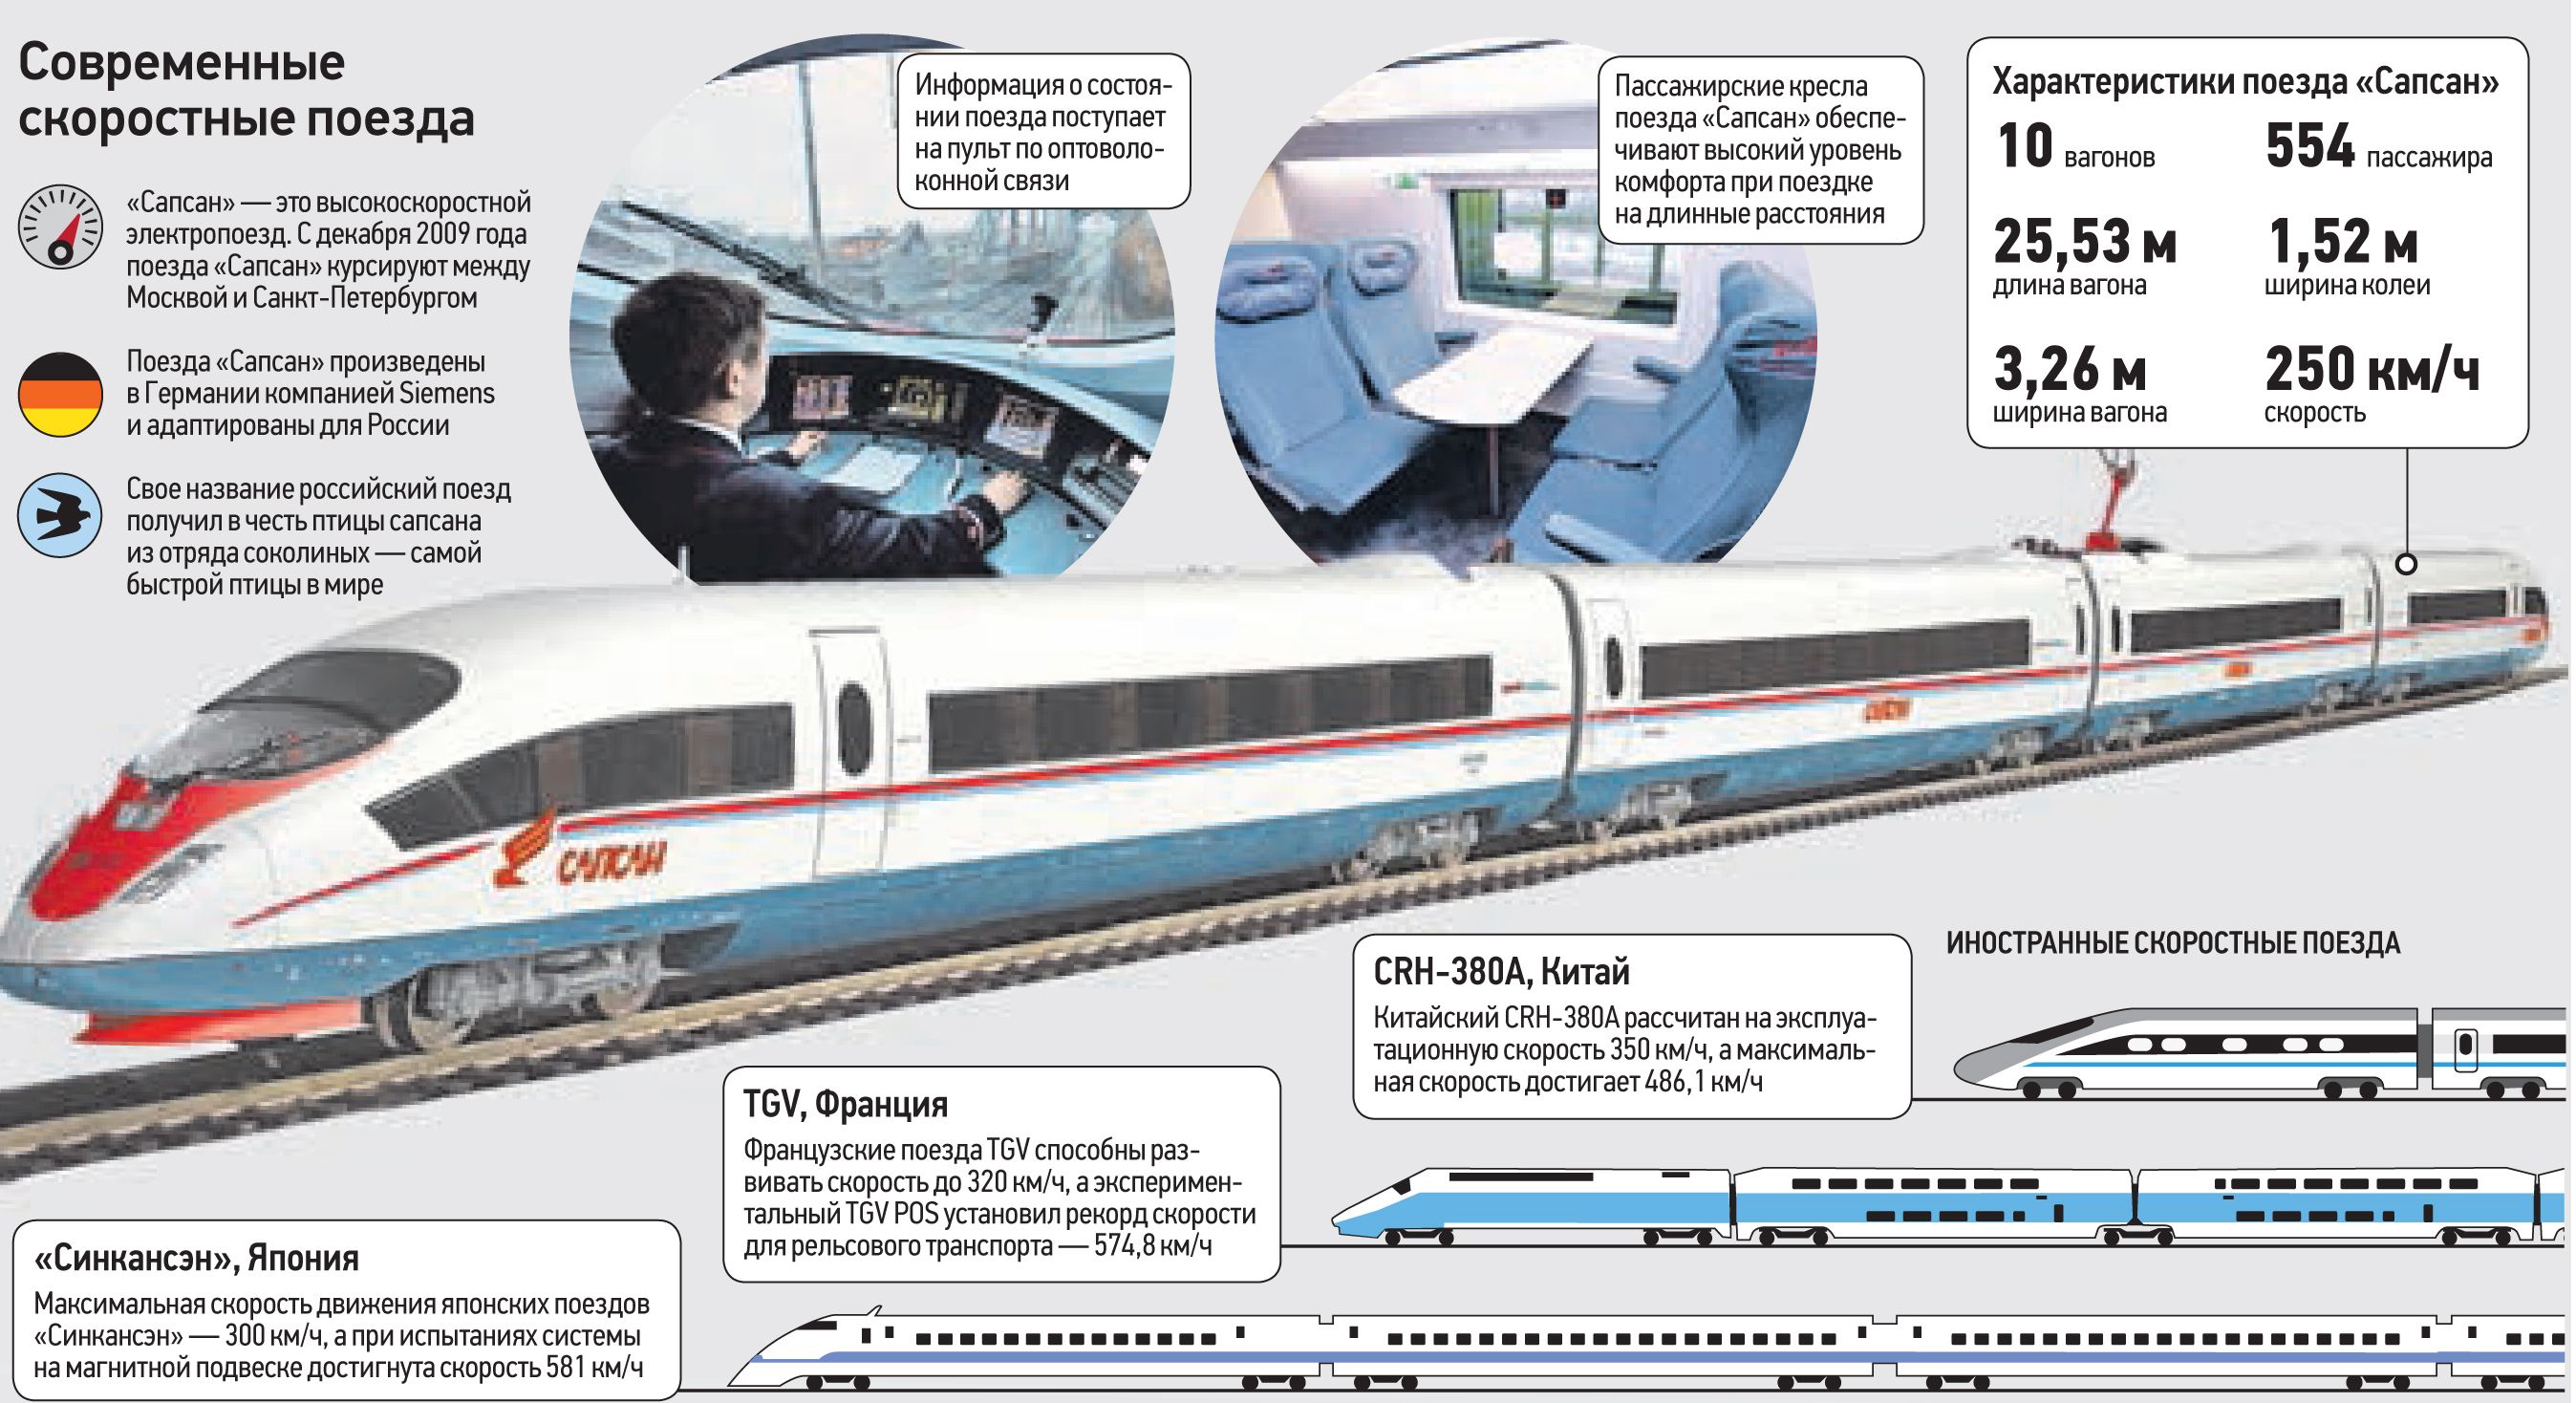 Самые быстрые поезда в мире: топ-10 высокоскоростных составов